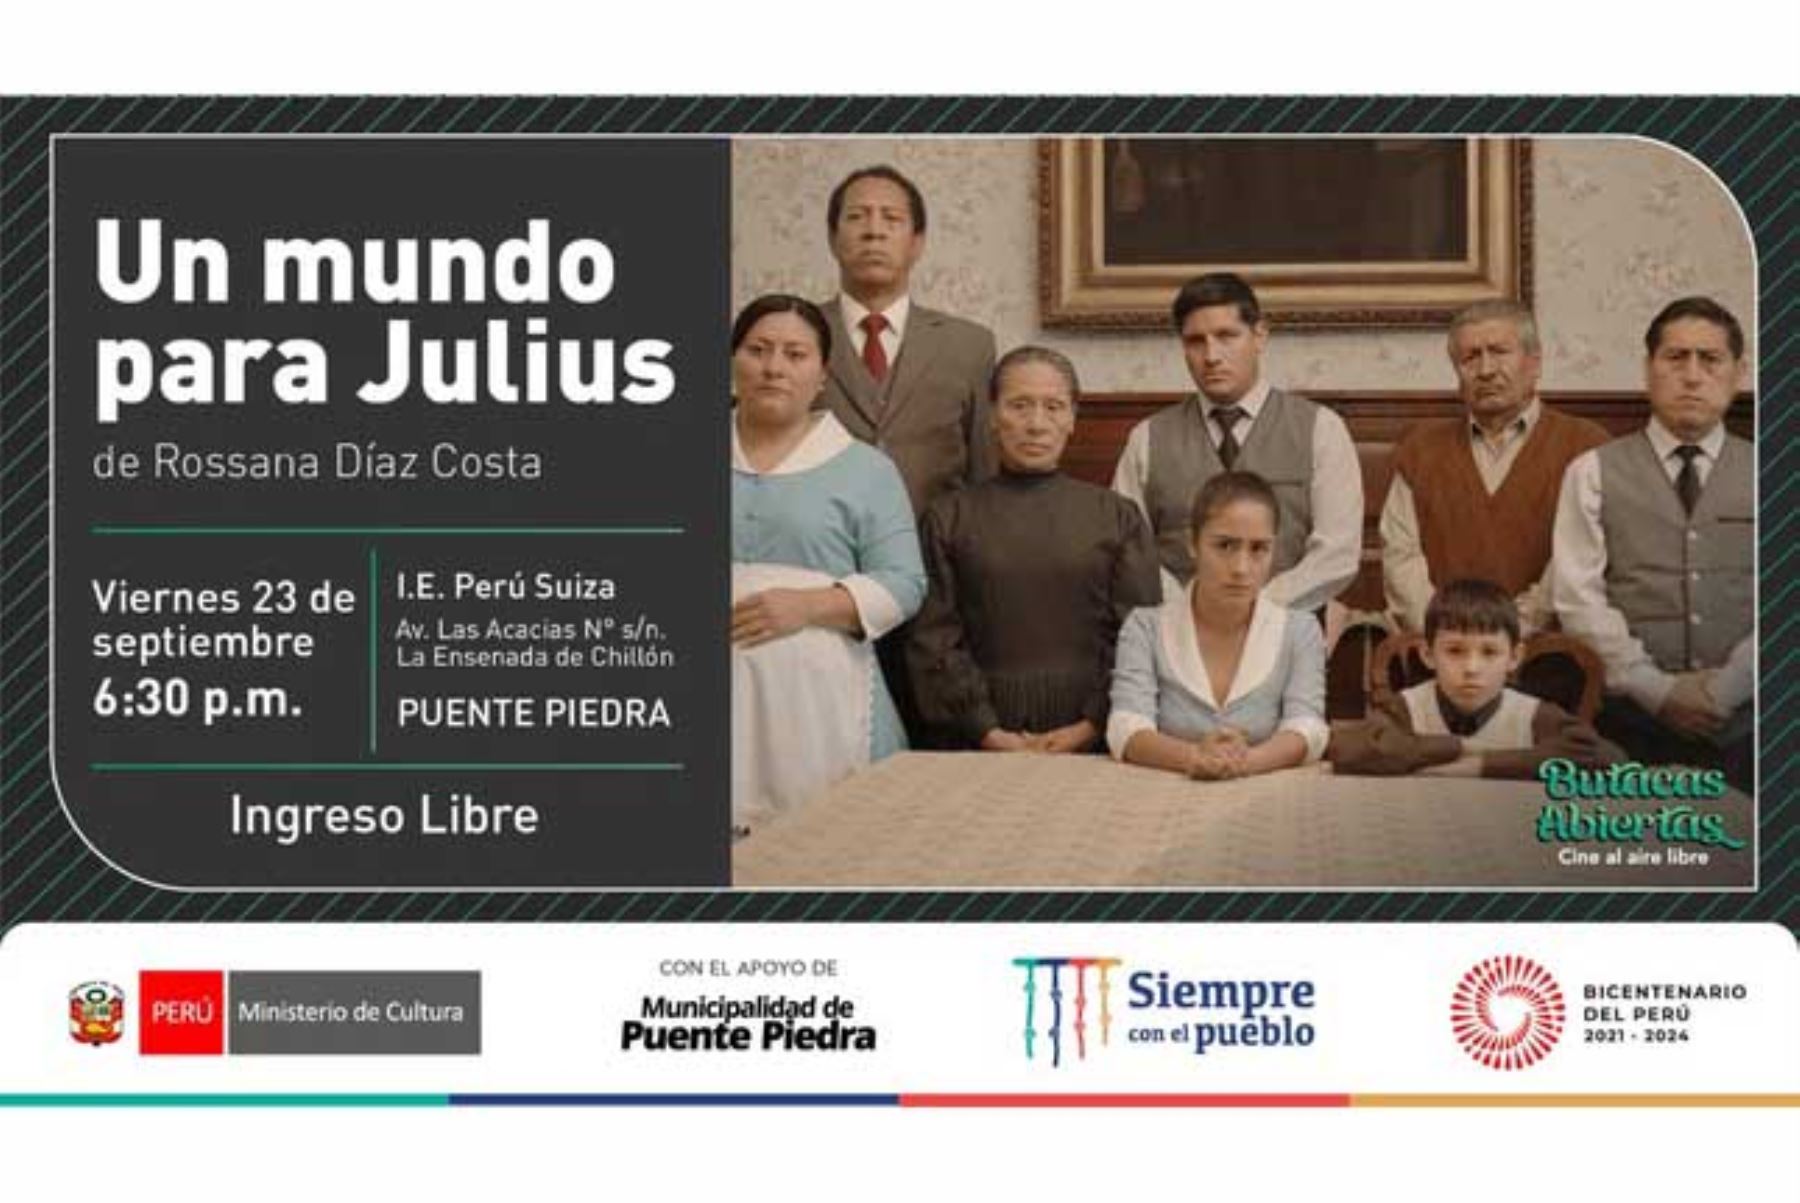 El programa “Butacas abiertas, cine al aire libre” lleva cine peruano a espacios abiertos y regresará al distrito de Puente Piedra este jueves 22 y viernes 23. Foto: Difusión